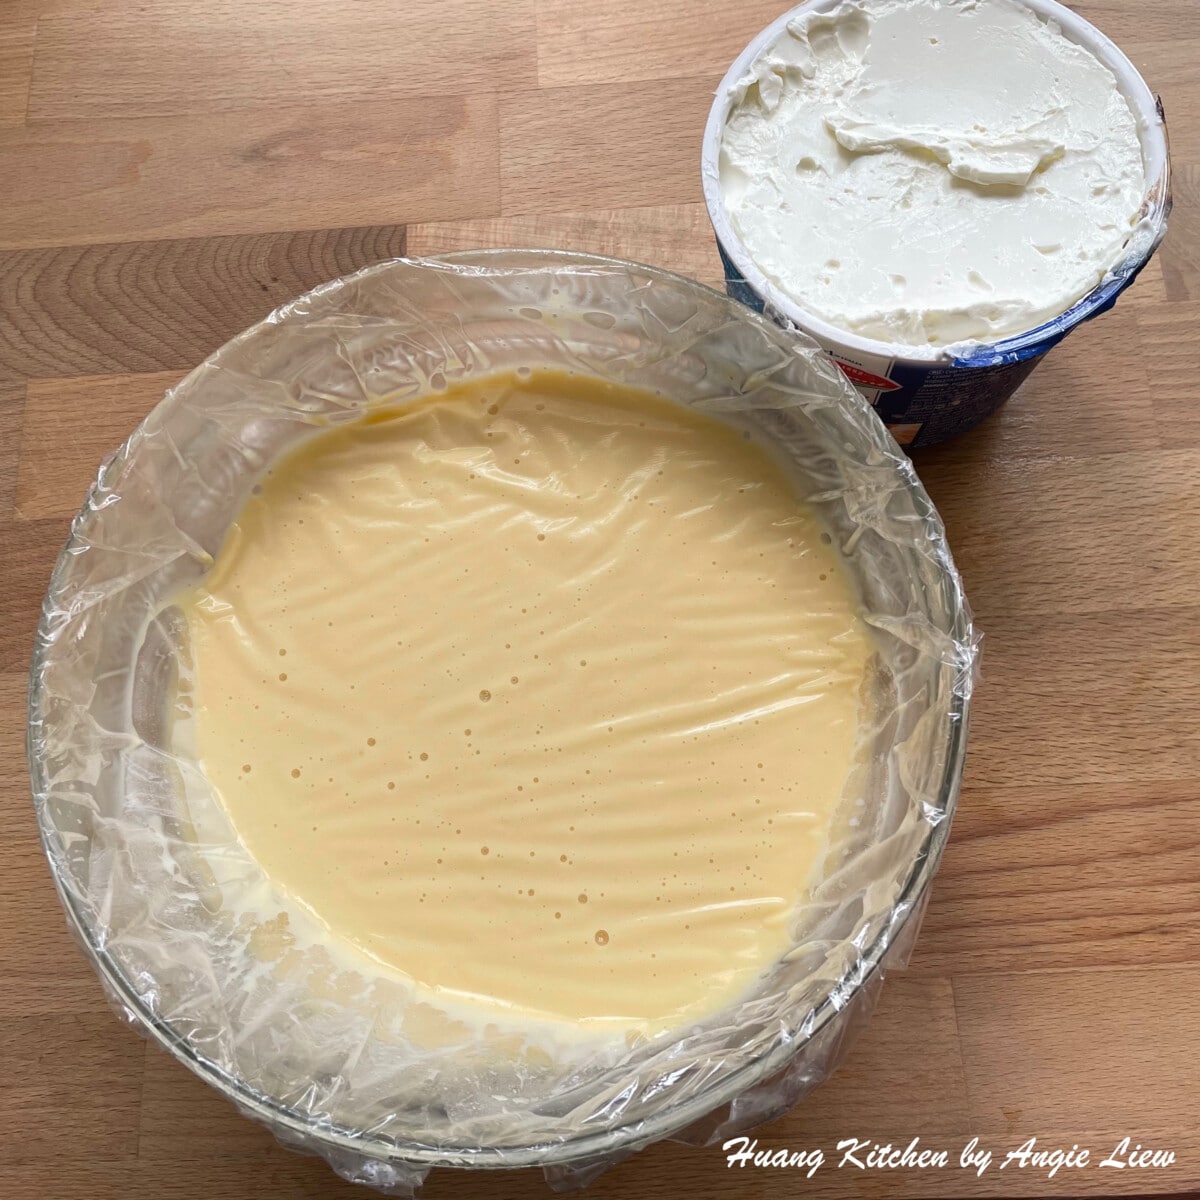 Easy Homemade Tiramisu Recipe by Huang Kitchen - Prepare Mascarpone Cheese